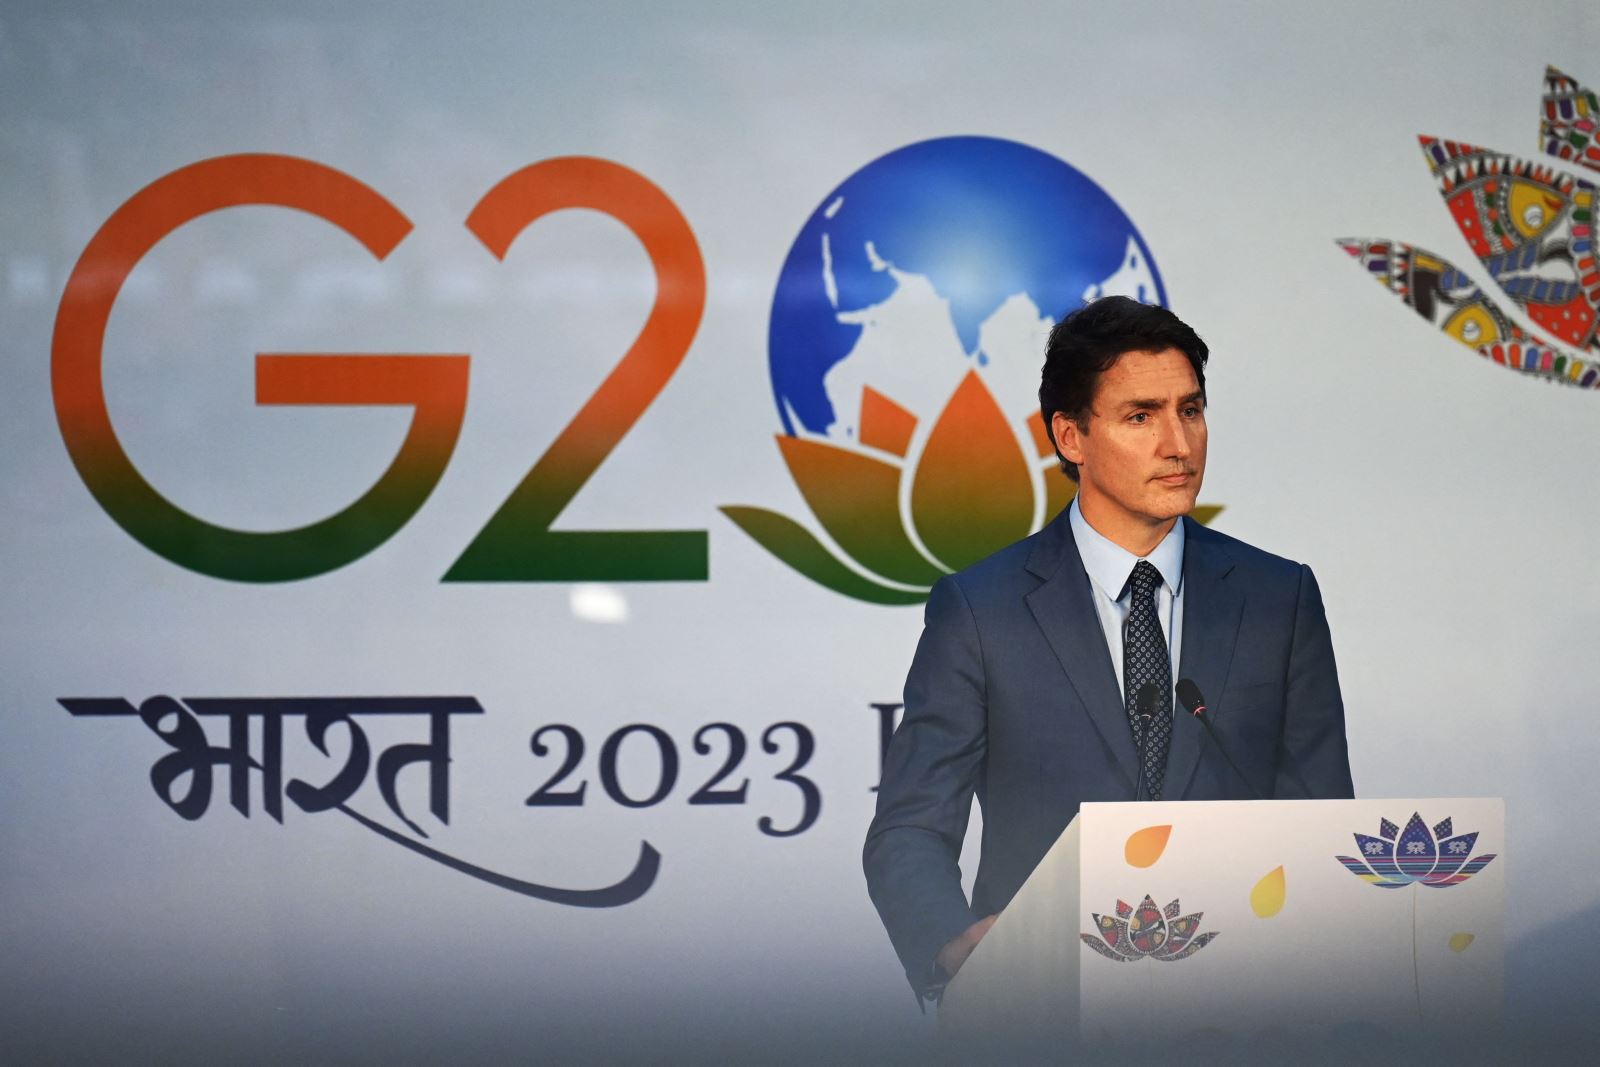 Trục trặc khiến Thủ tướng Canada vẫn chưa thể rời Ấn Độ sau hội nghị G20 - Ảnh 1.